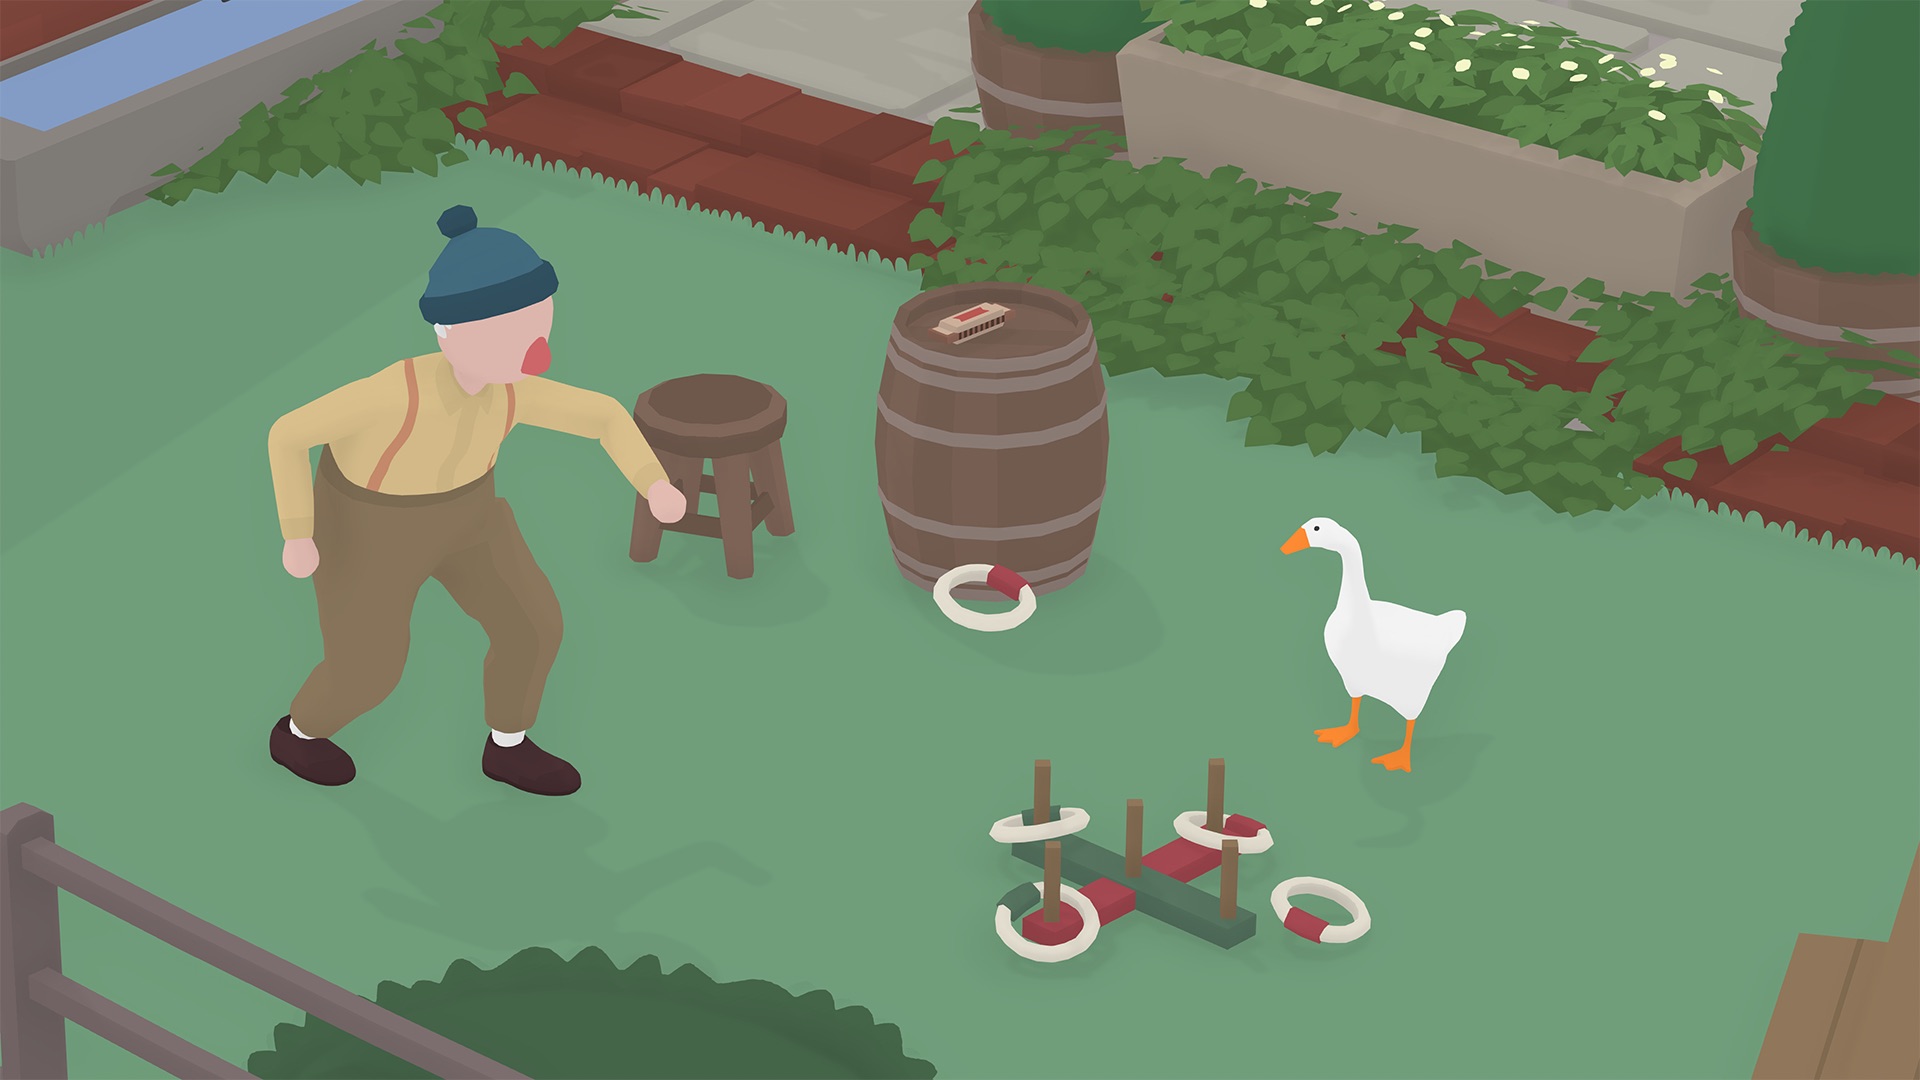 Atsisiuntimas Untitled Goose Game Nemokamas - Naujausios Versijos